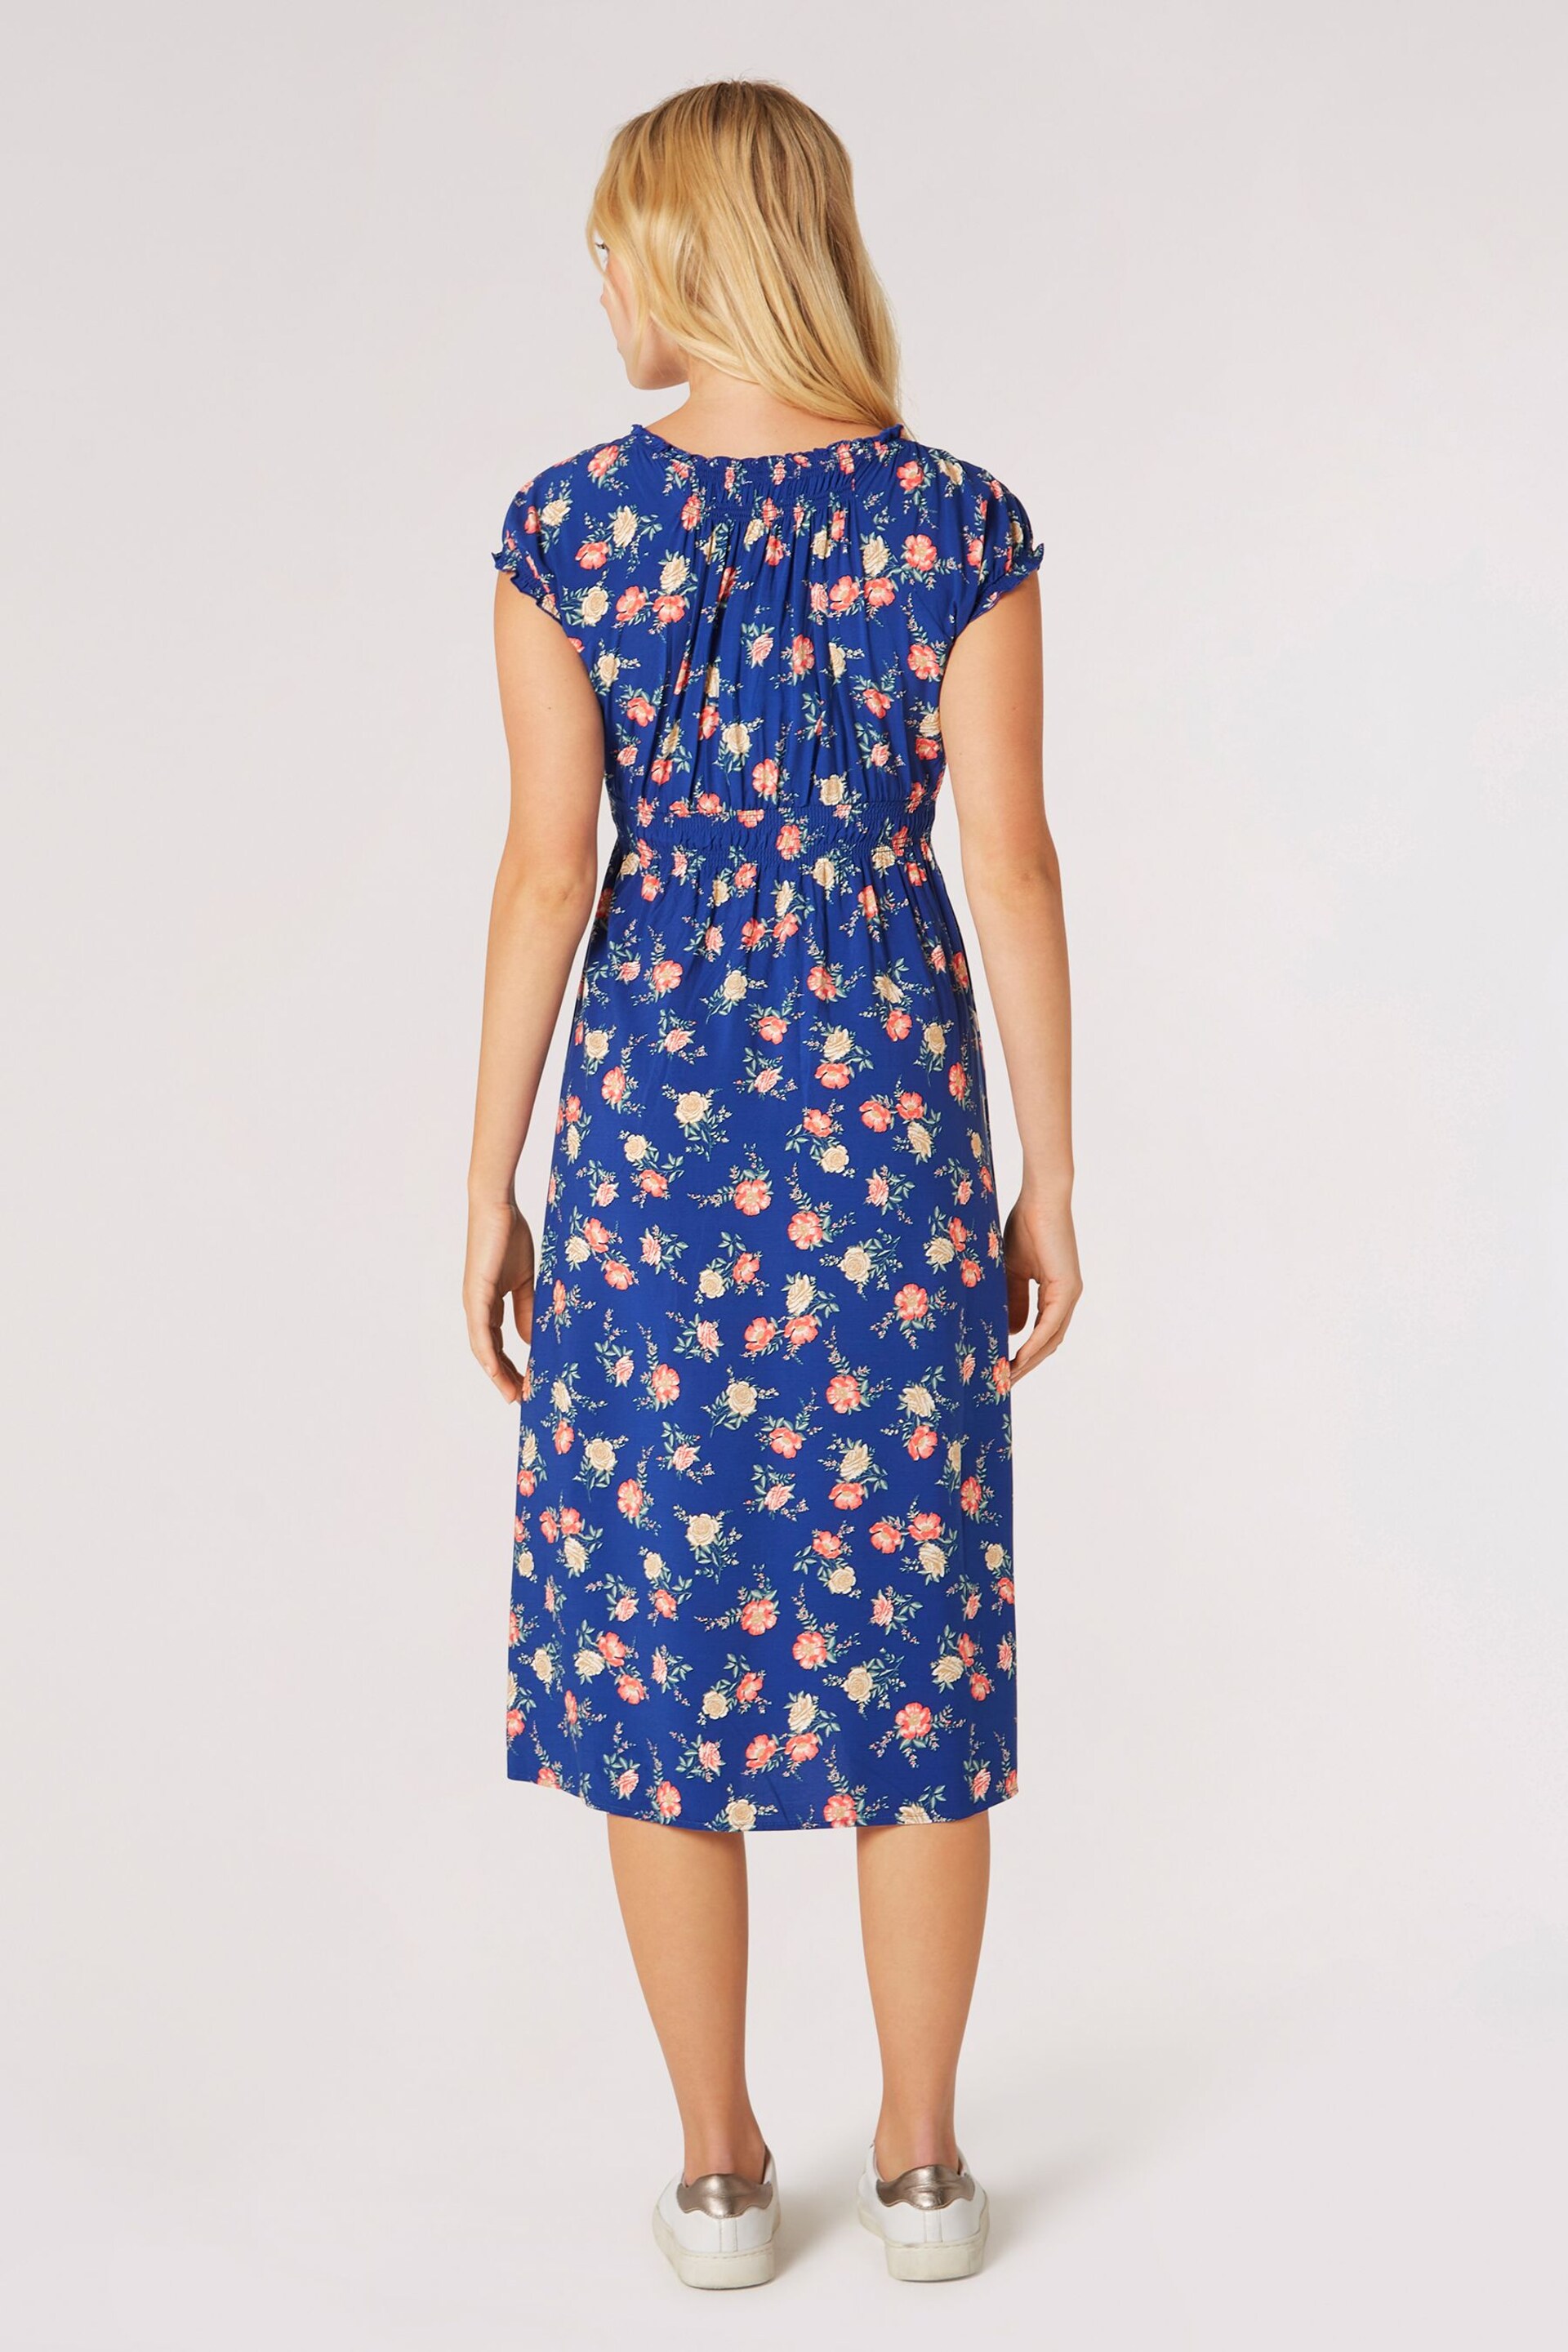 Apricot Blue Vintage Rose Milkmaid Midi Dress - Image 4 of 4